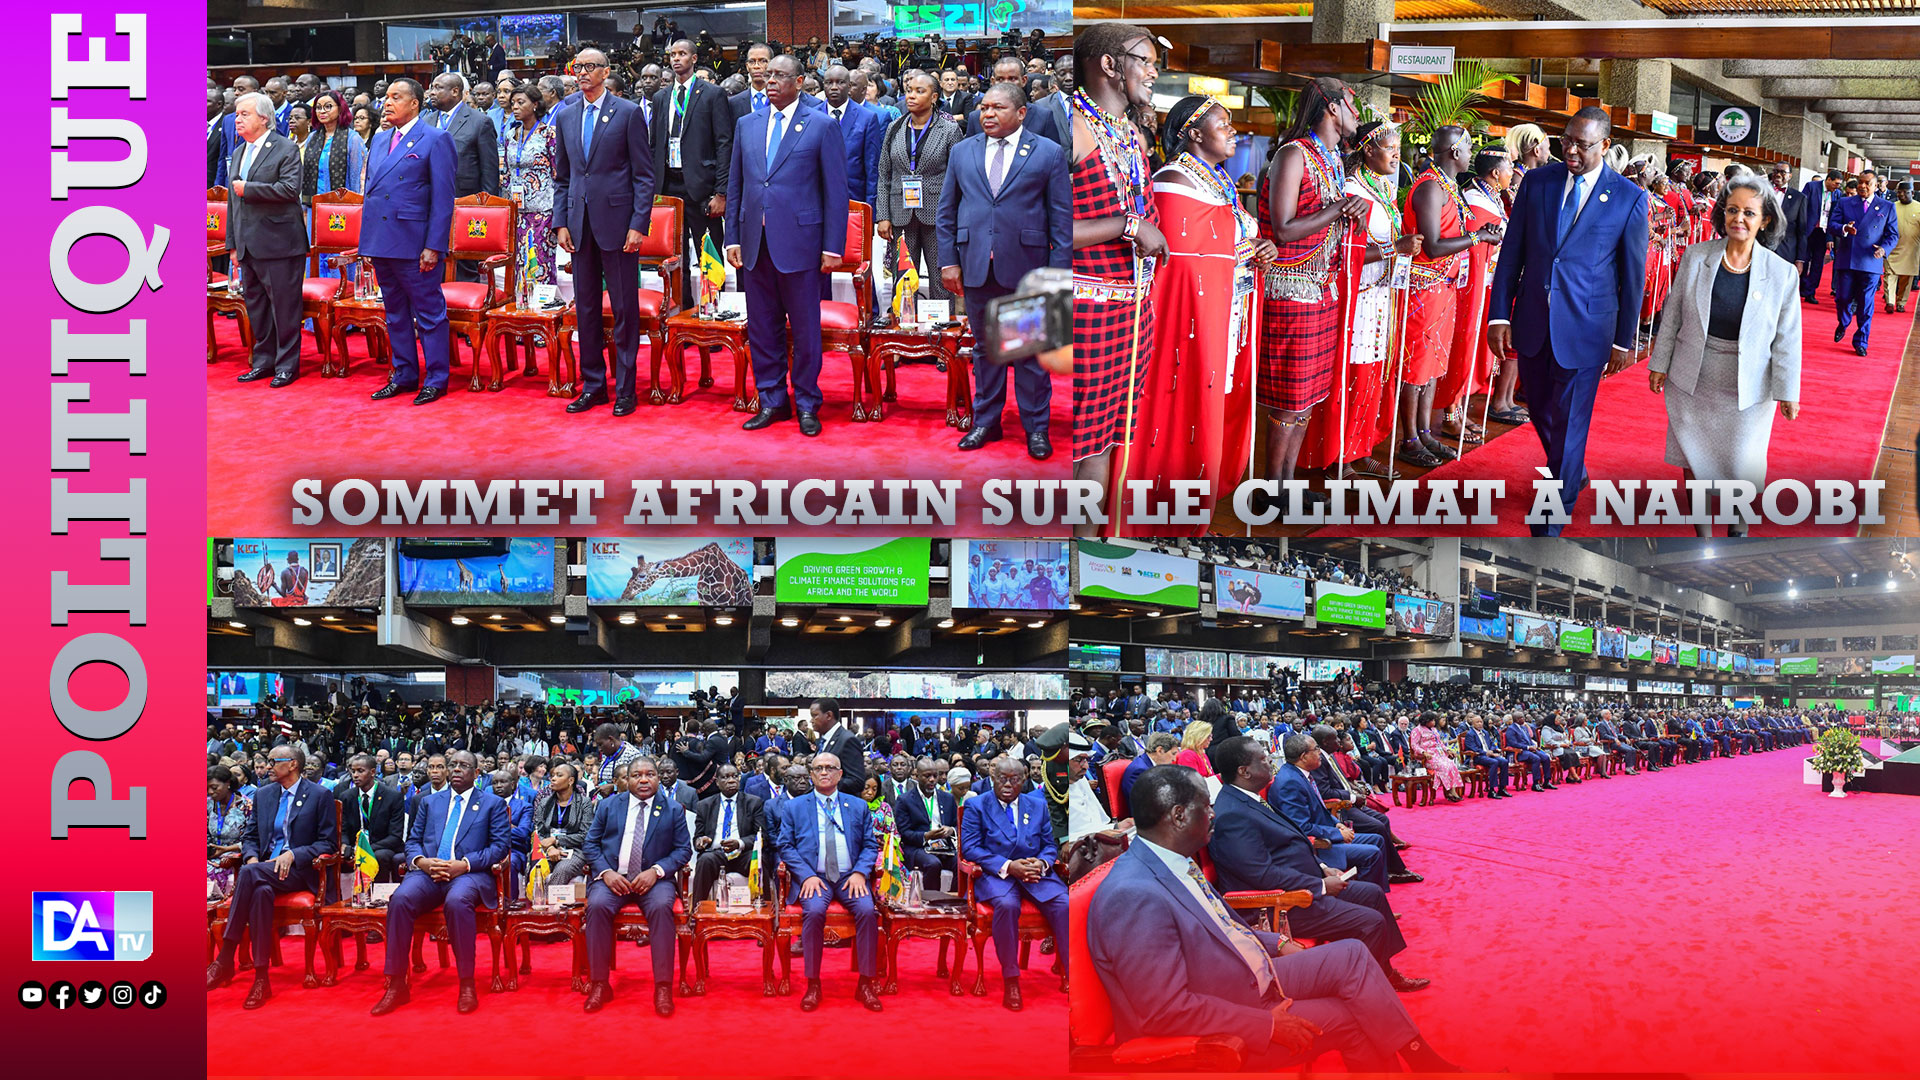 Sommet africain sur le climat à Nairobi : "Nous avons l’ambition de porter à 40% la part des énergies renouvelables dans notre mix énergétique d’ici 2030" (Macky Sall).